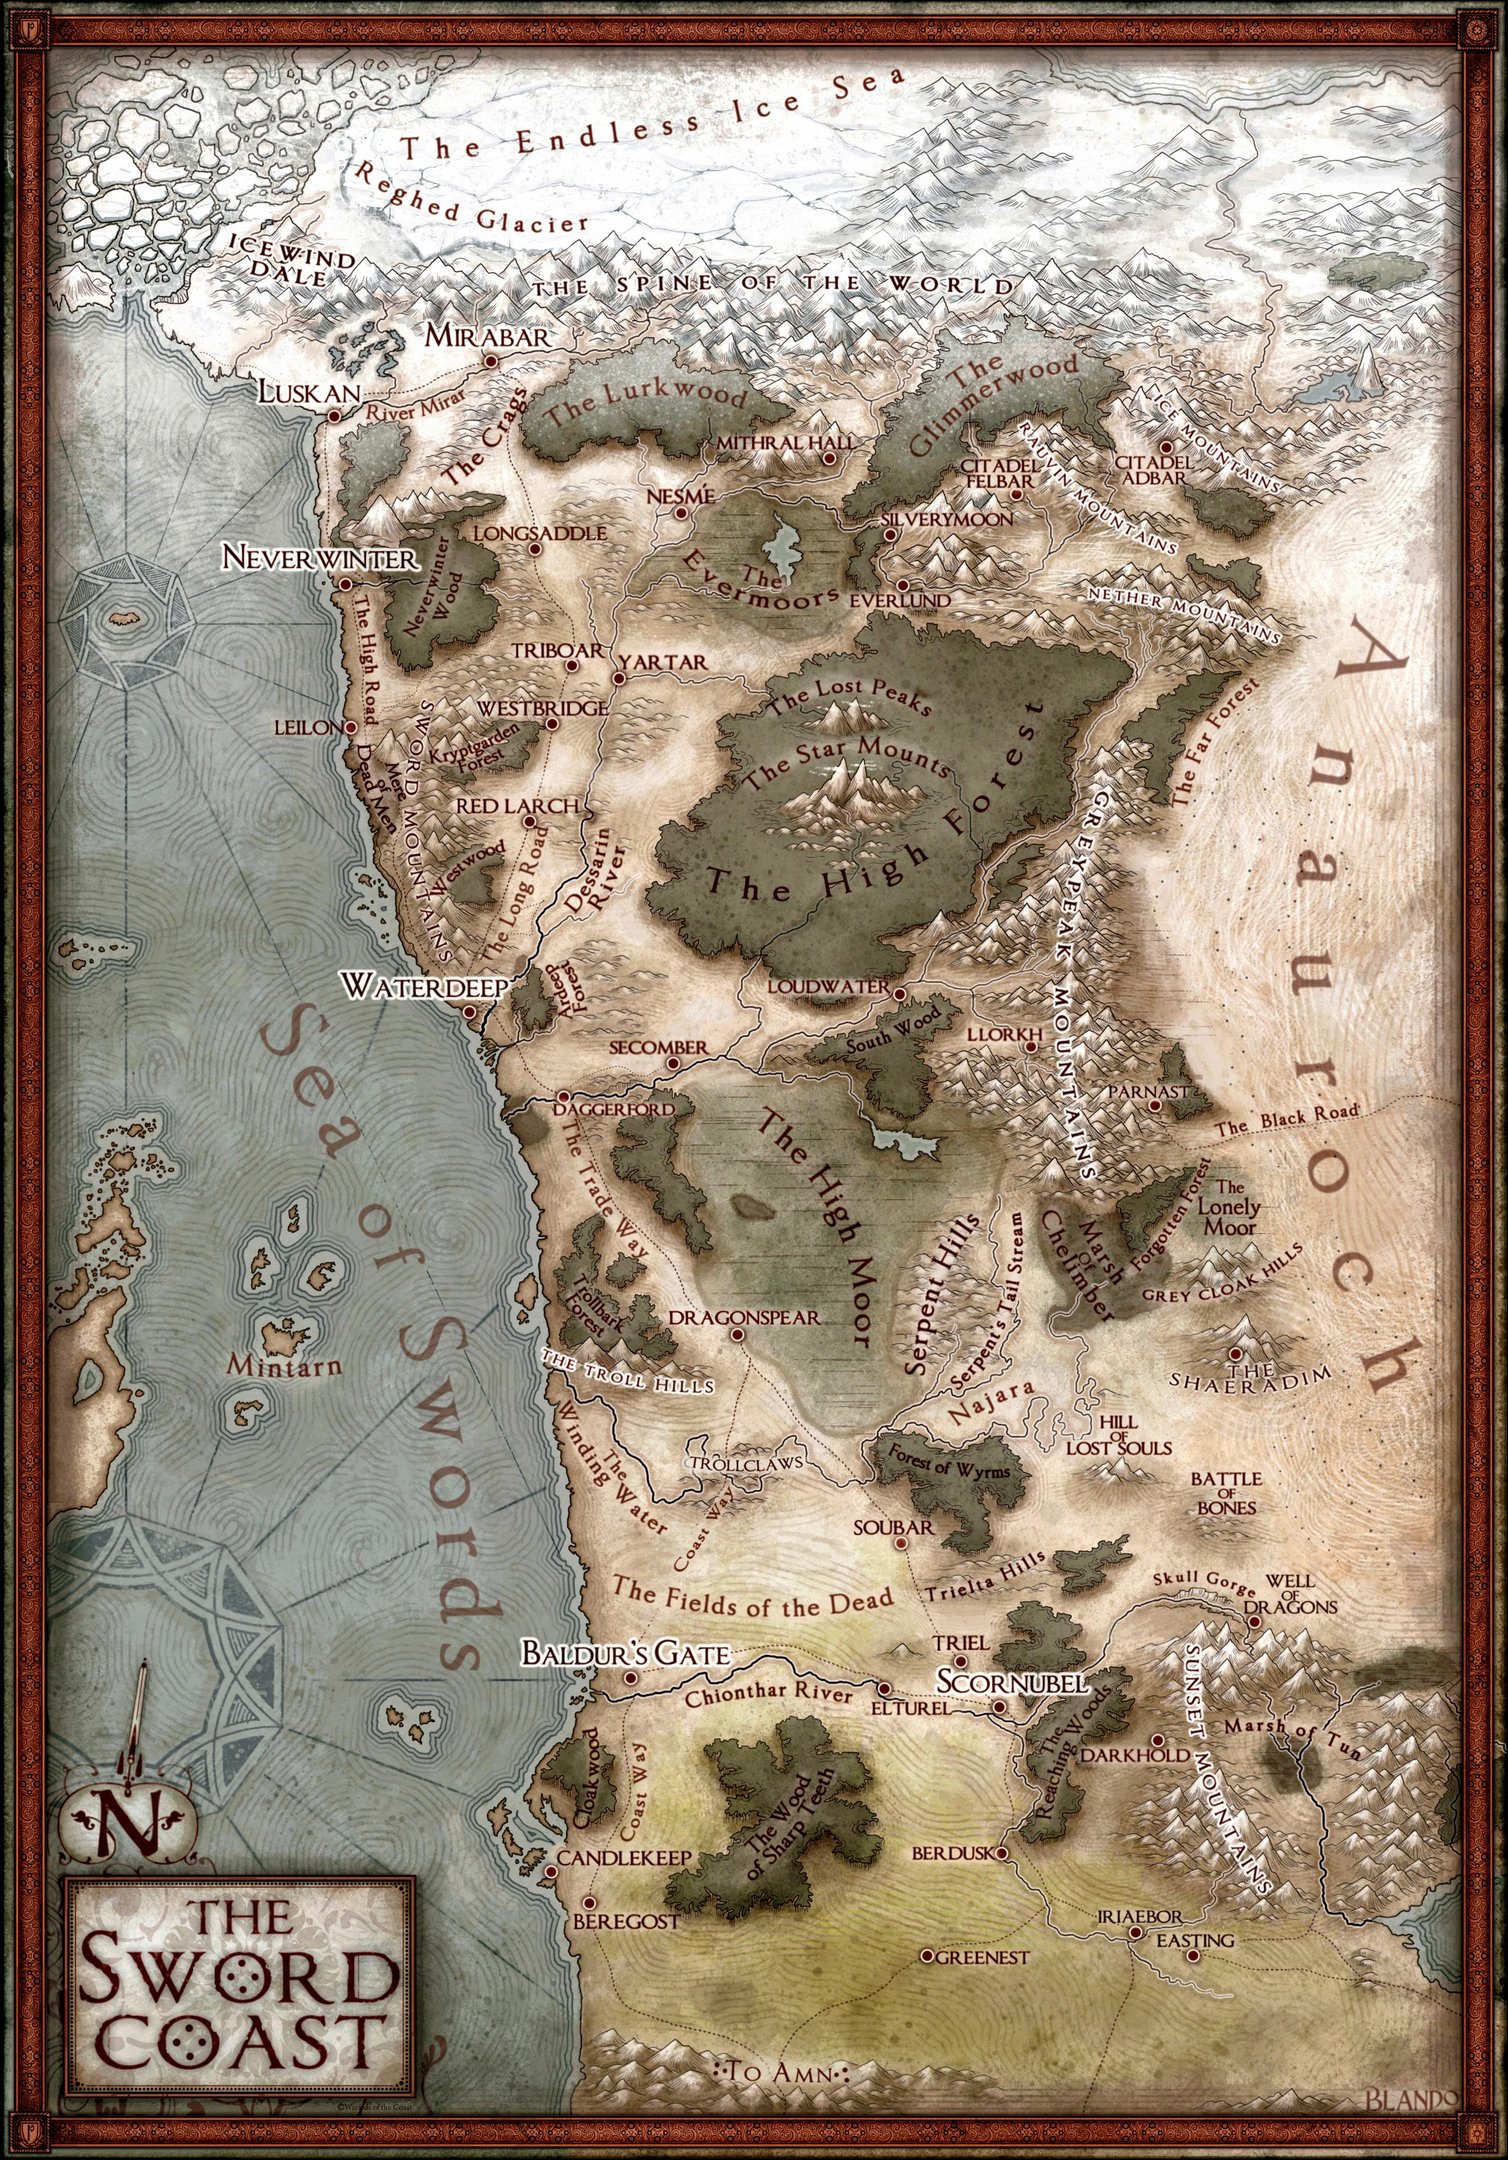 Mapa oficial da Costa da Espada, uma das principais regiões de Forgotten Realms.